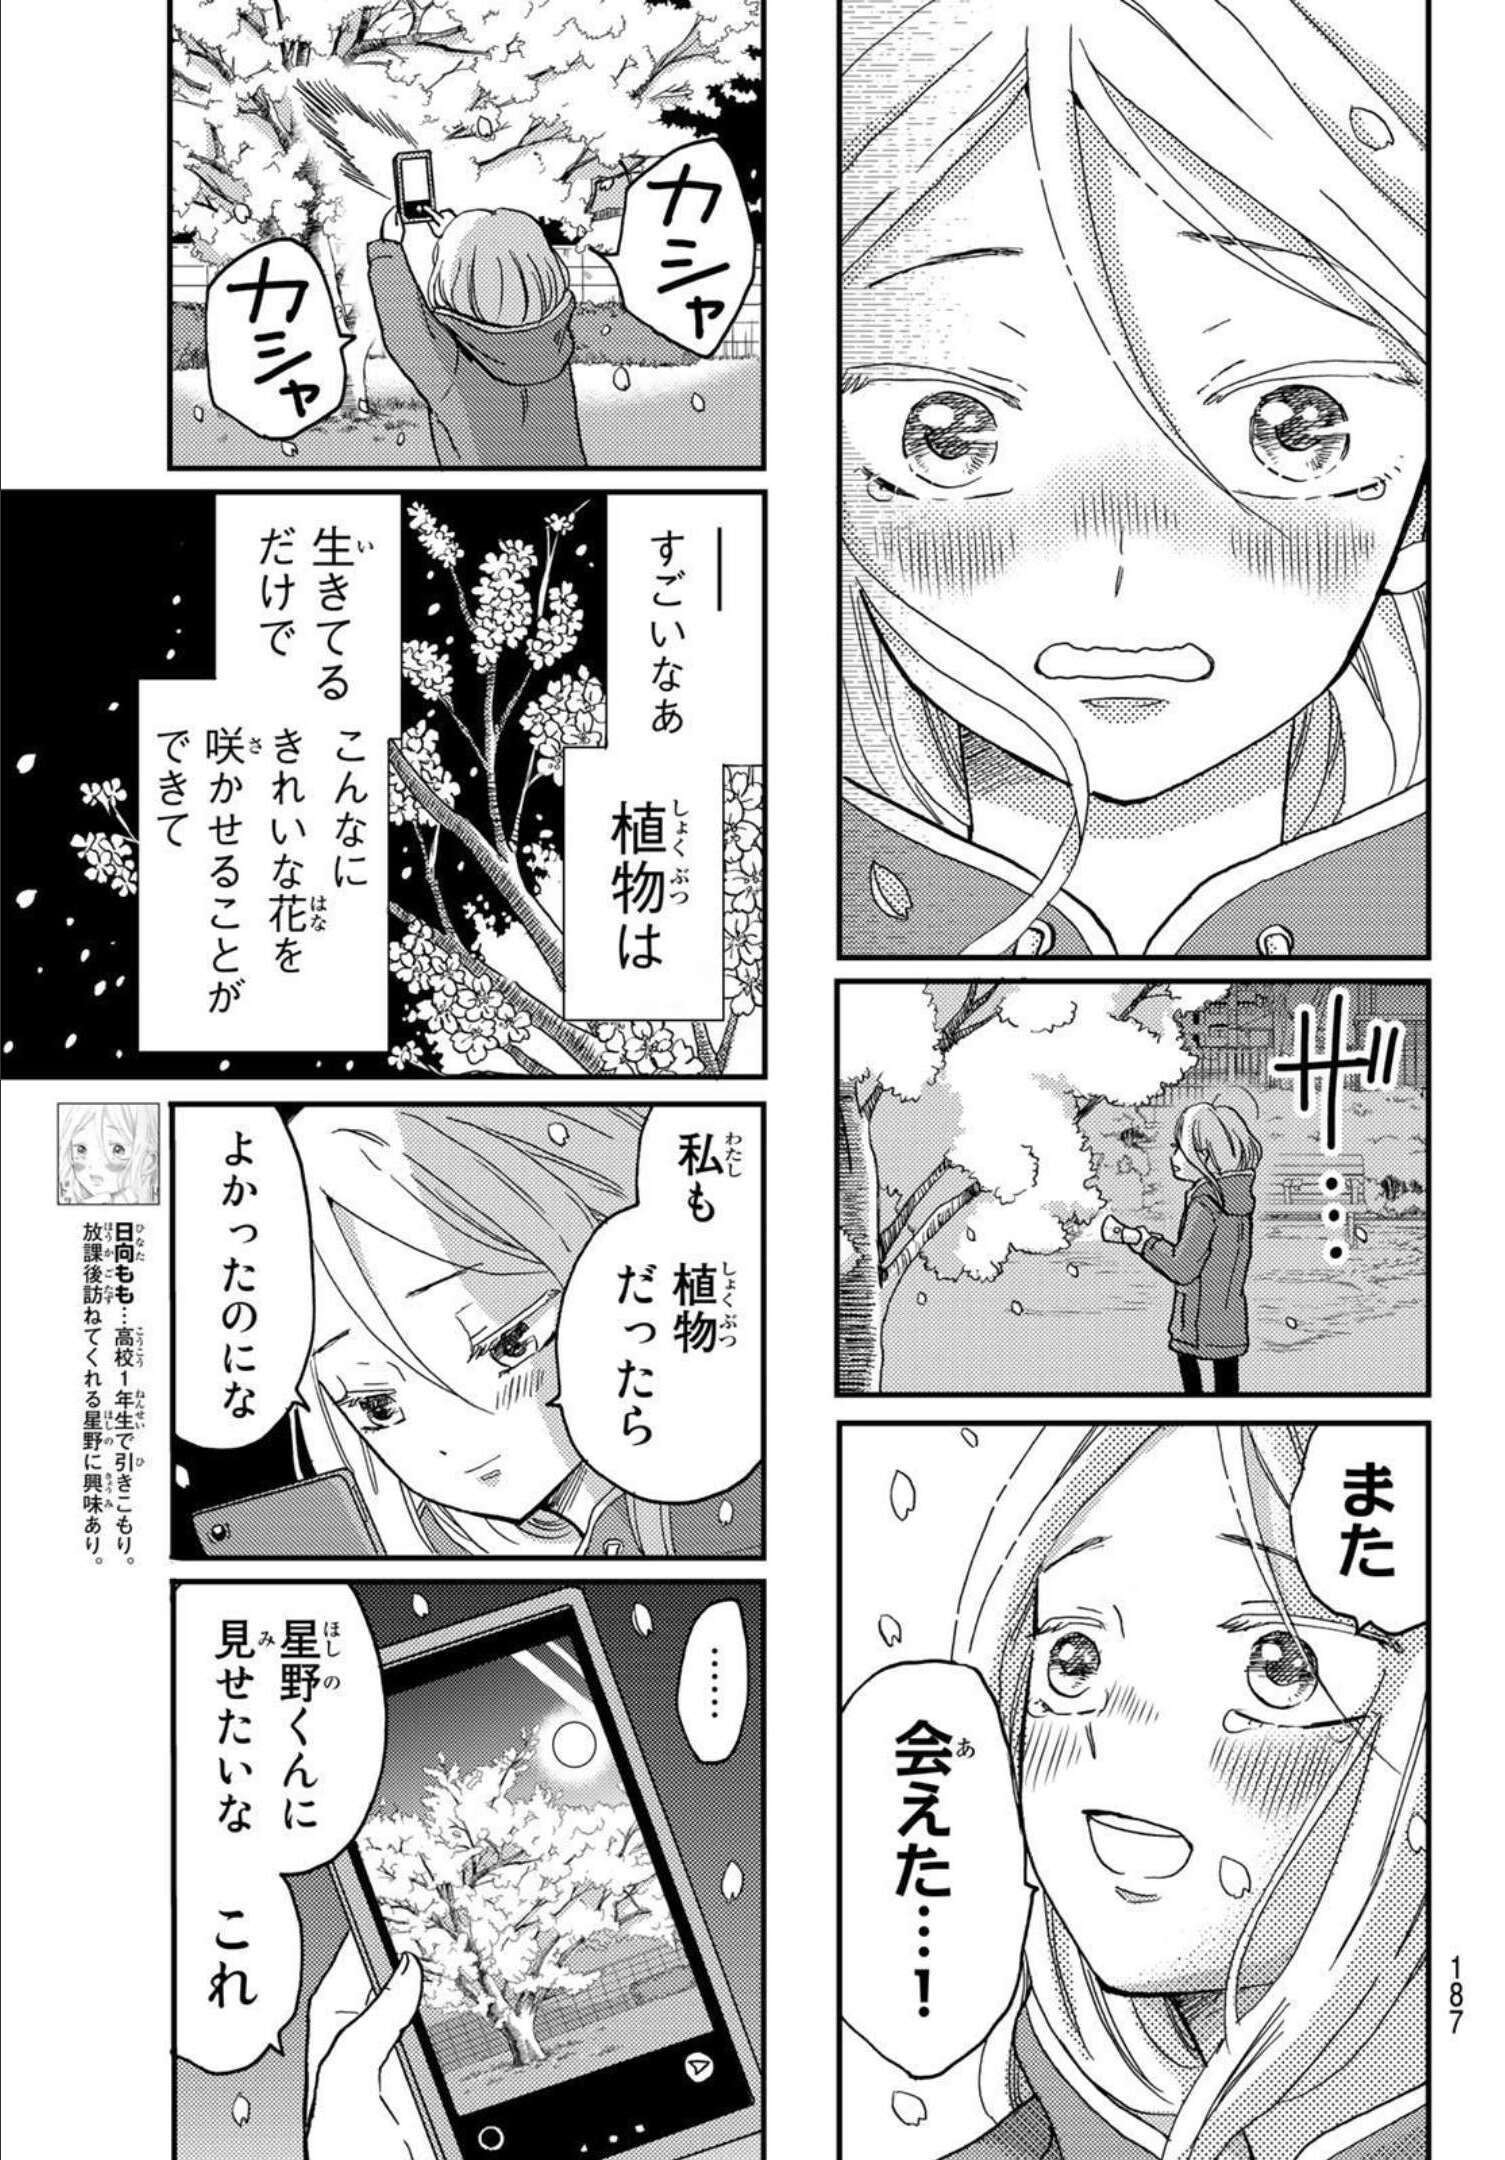 Hinata-san, Hoshino desu. - Chapter 006 - Page 3